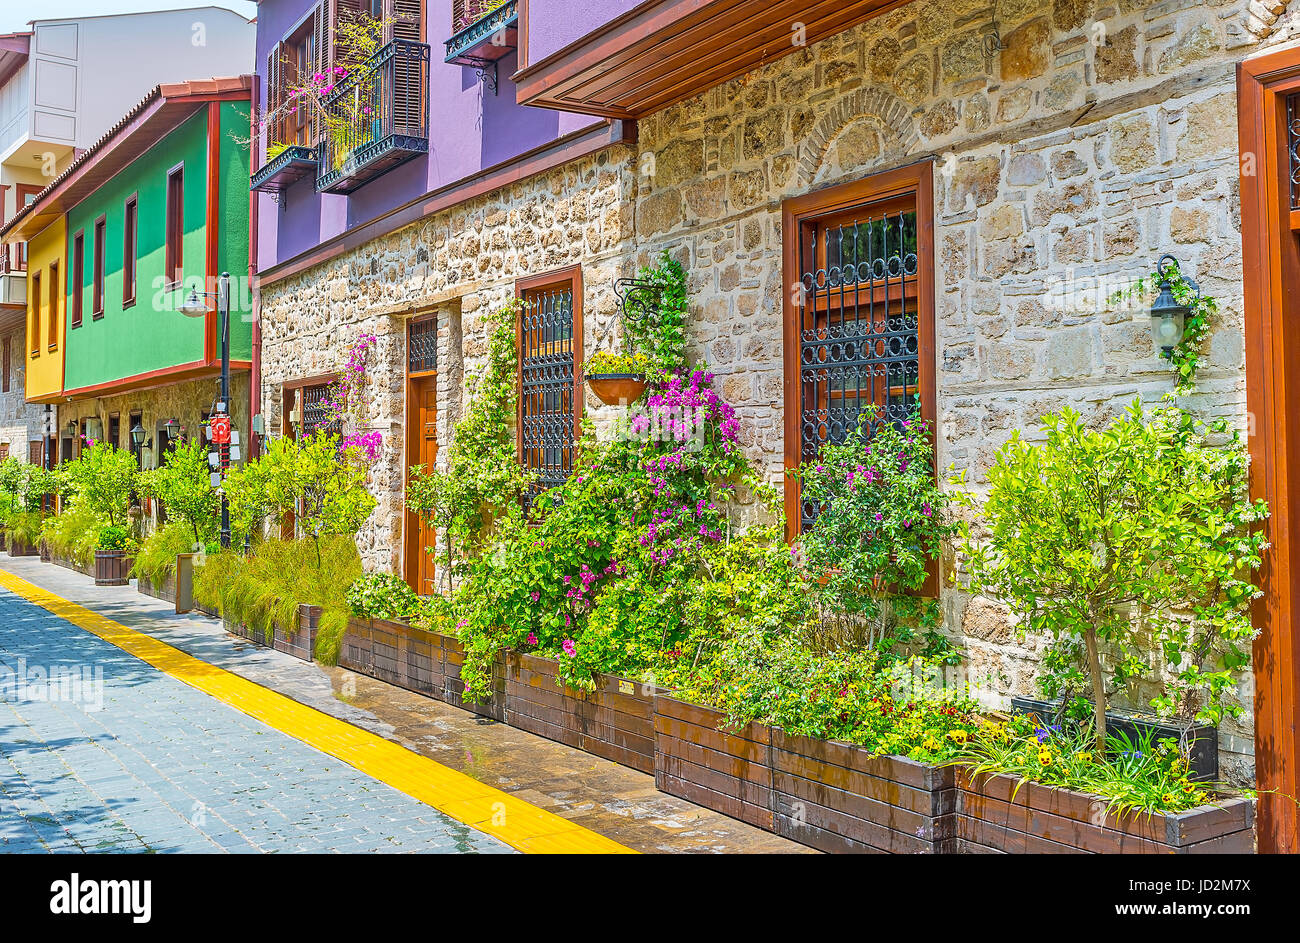 Die Holzbottiche mit Bäumen, Sträuchern und Blumen an den Wänden der alten Hütten sind die perfekte Straße Dekore, Kaleici, Antalya, Türkei. Stockfoto